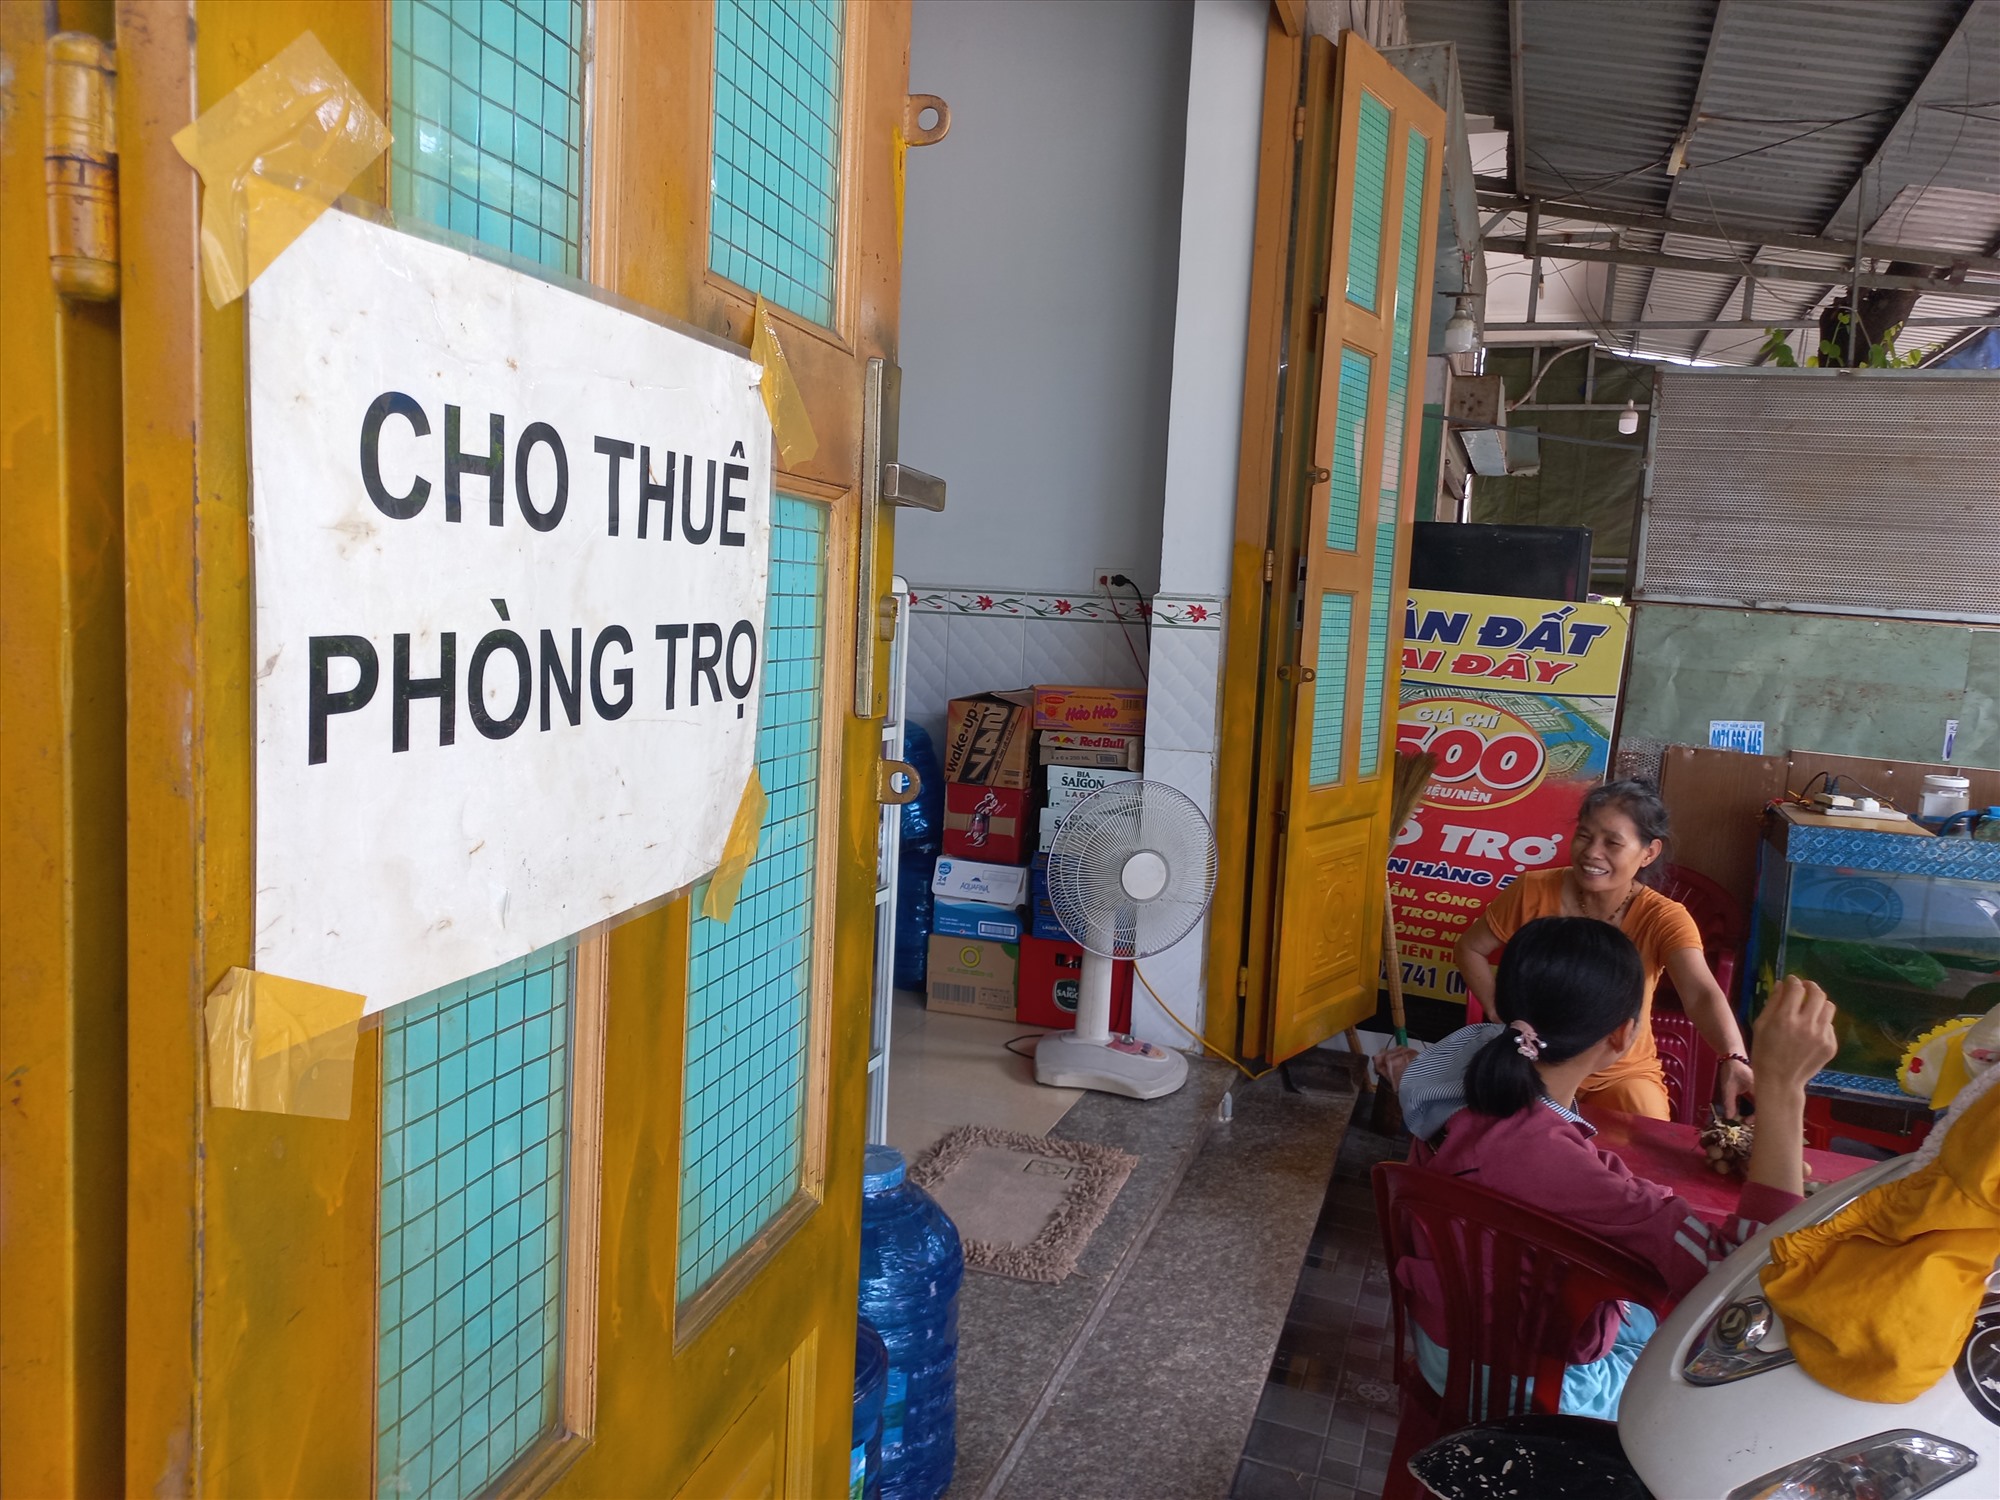 Dãy trọ của bà Nguyễn Thị The (63 tuổi, ngụ đường D 36 khu dân cư Việt Sinh) cũng để bảng 